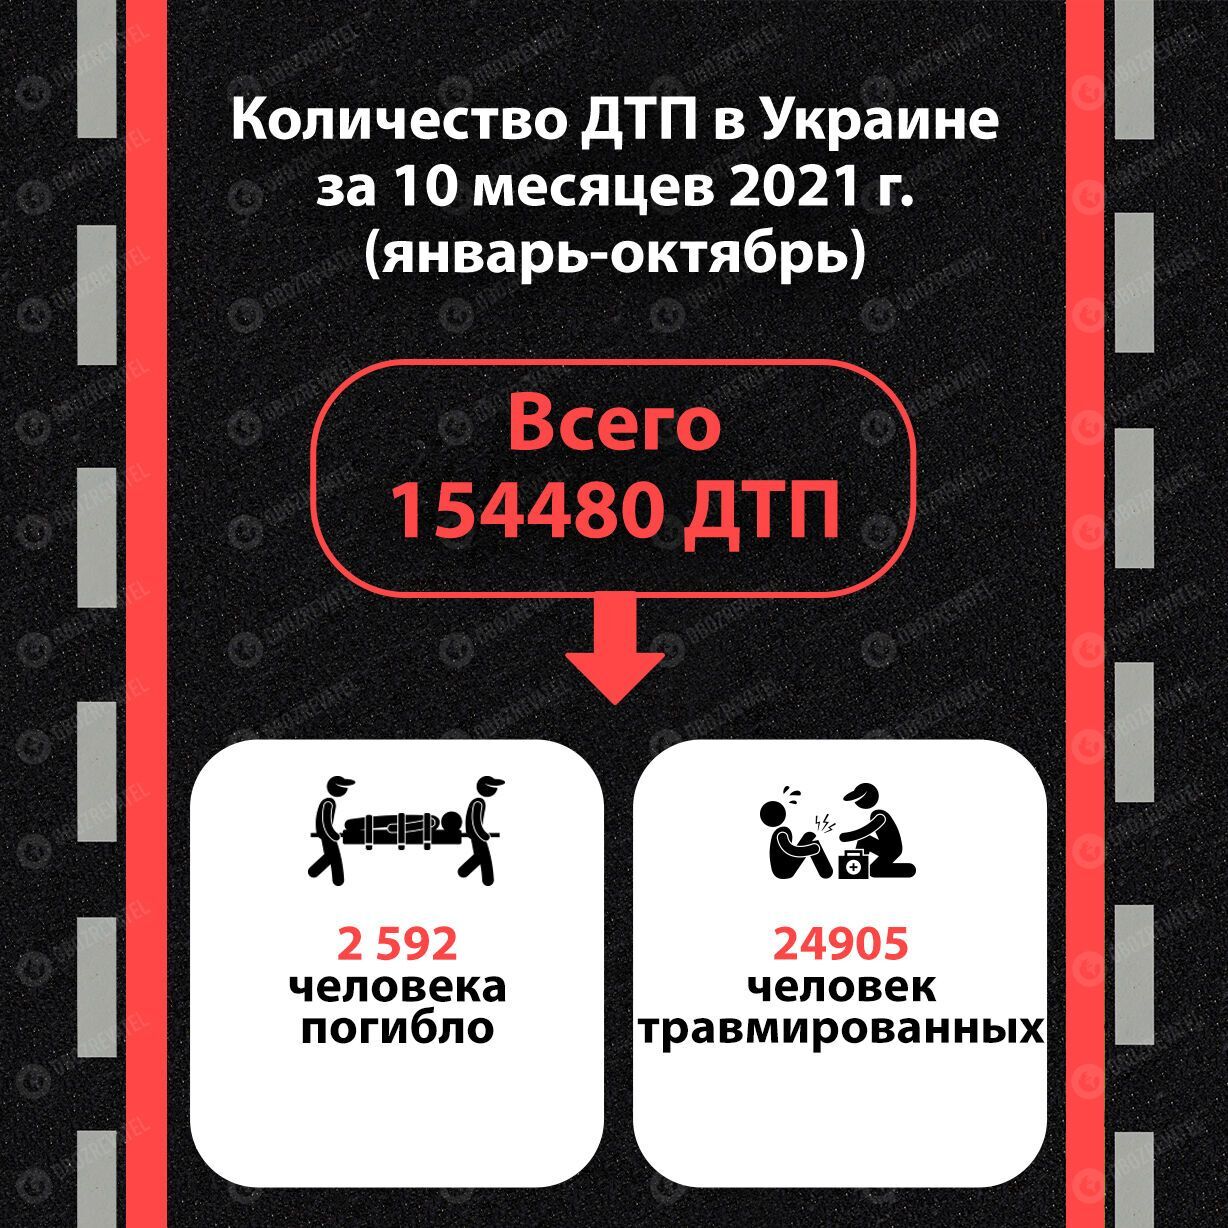 Статистика по ДТП в Украине, данные за десять месяцев 2021 года